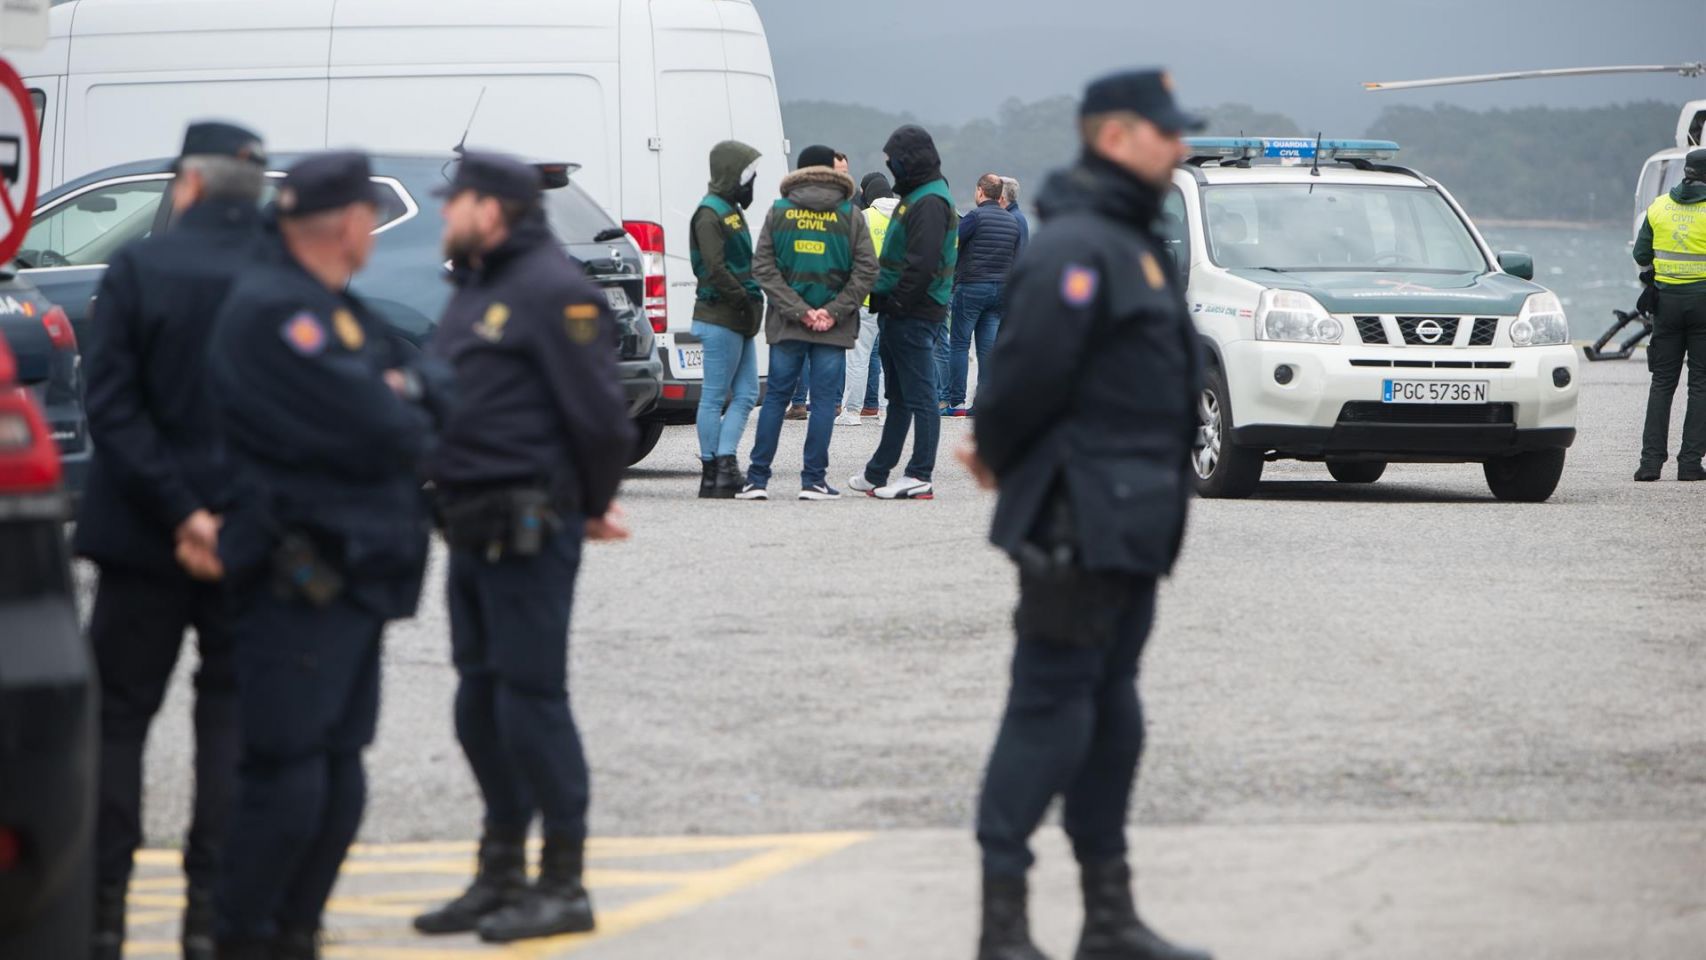 Despliegue de fuerzas y cuerpos de seguridad en el Puerto de Vilaxoán (Pontevedra).